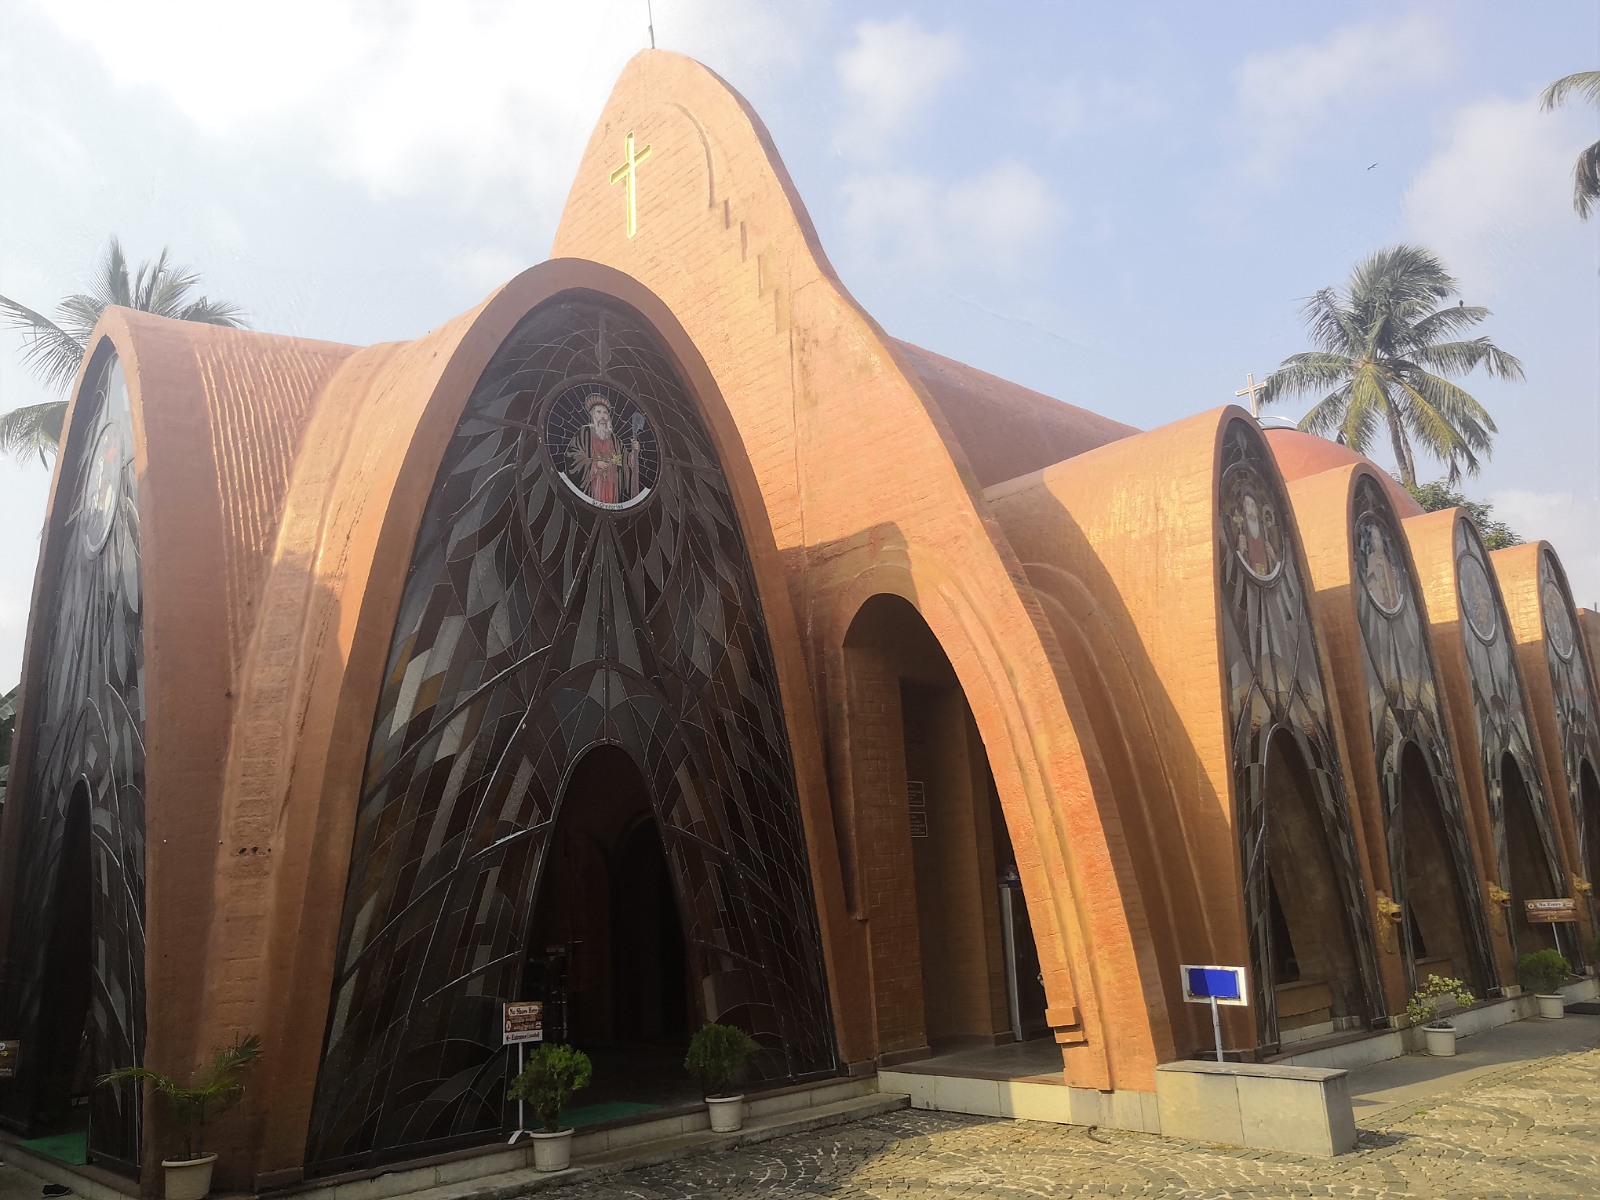 73. Bardzo ciekawy kształt kościoła chrześcijańskiego w mieście Koczin w Indiach.